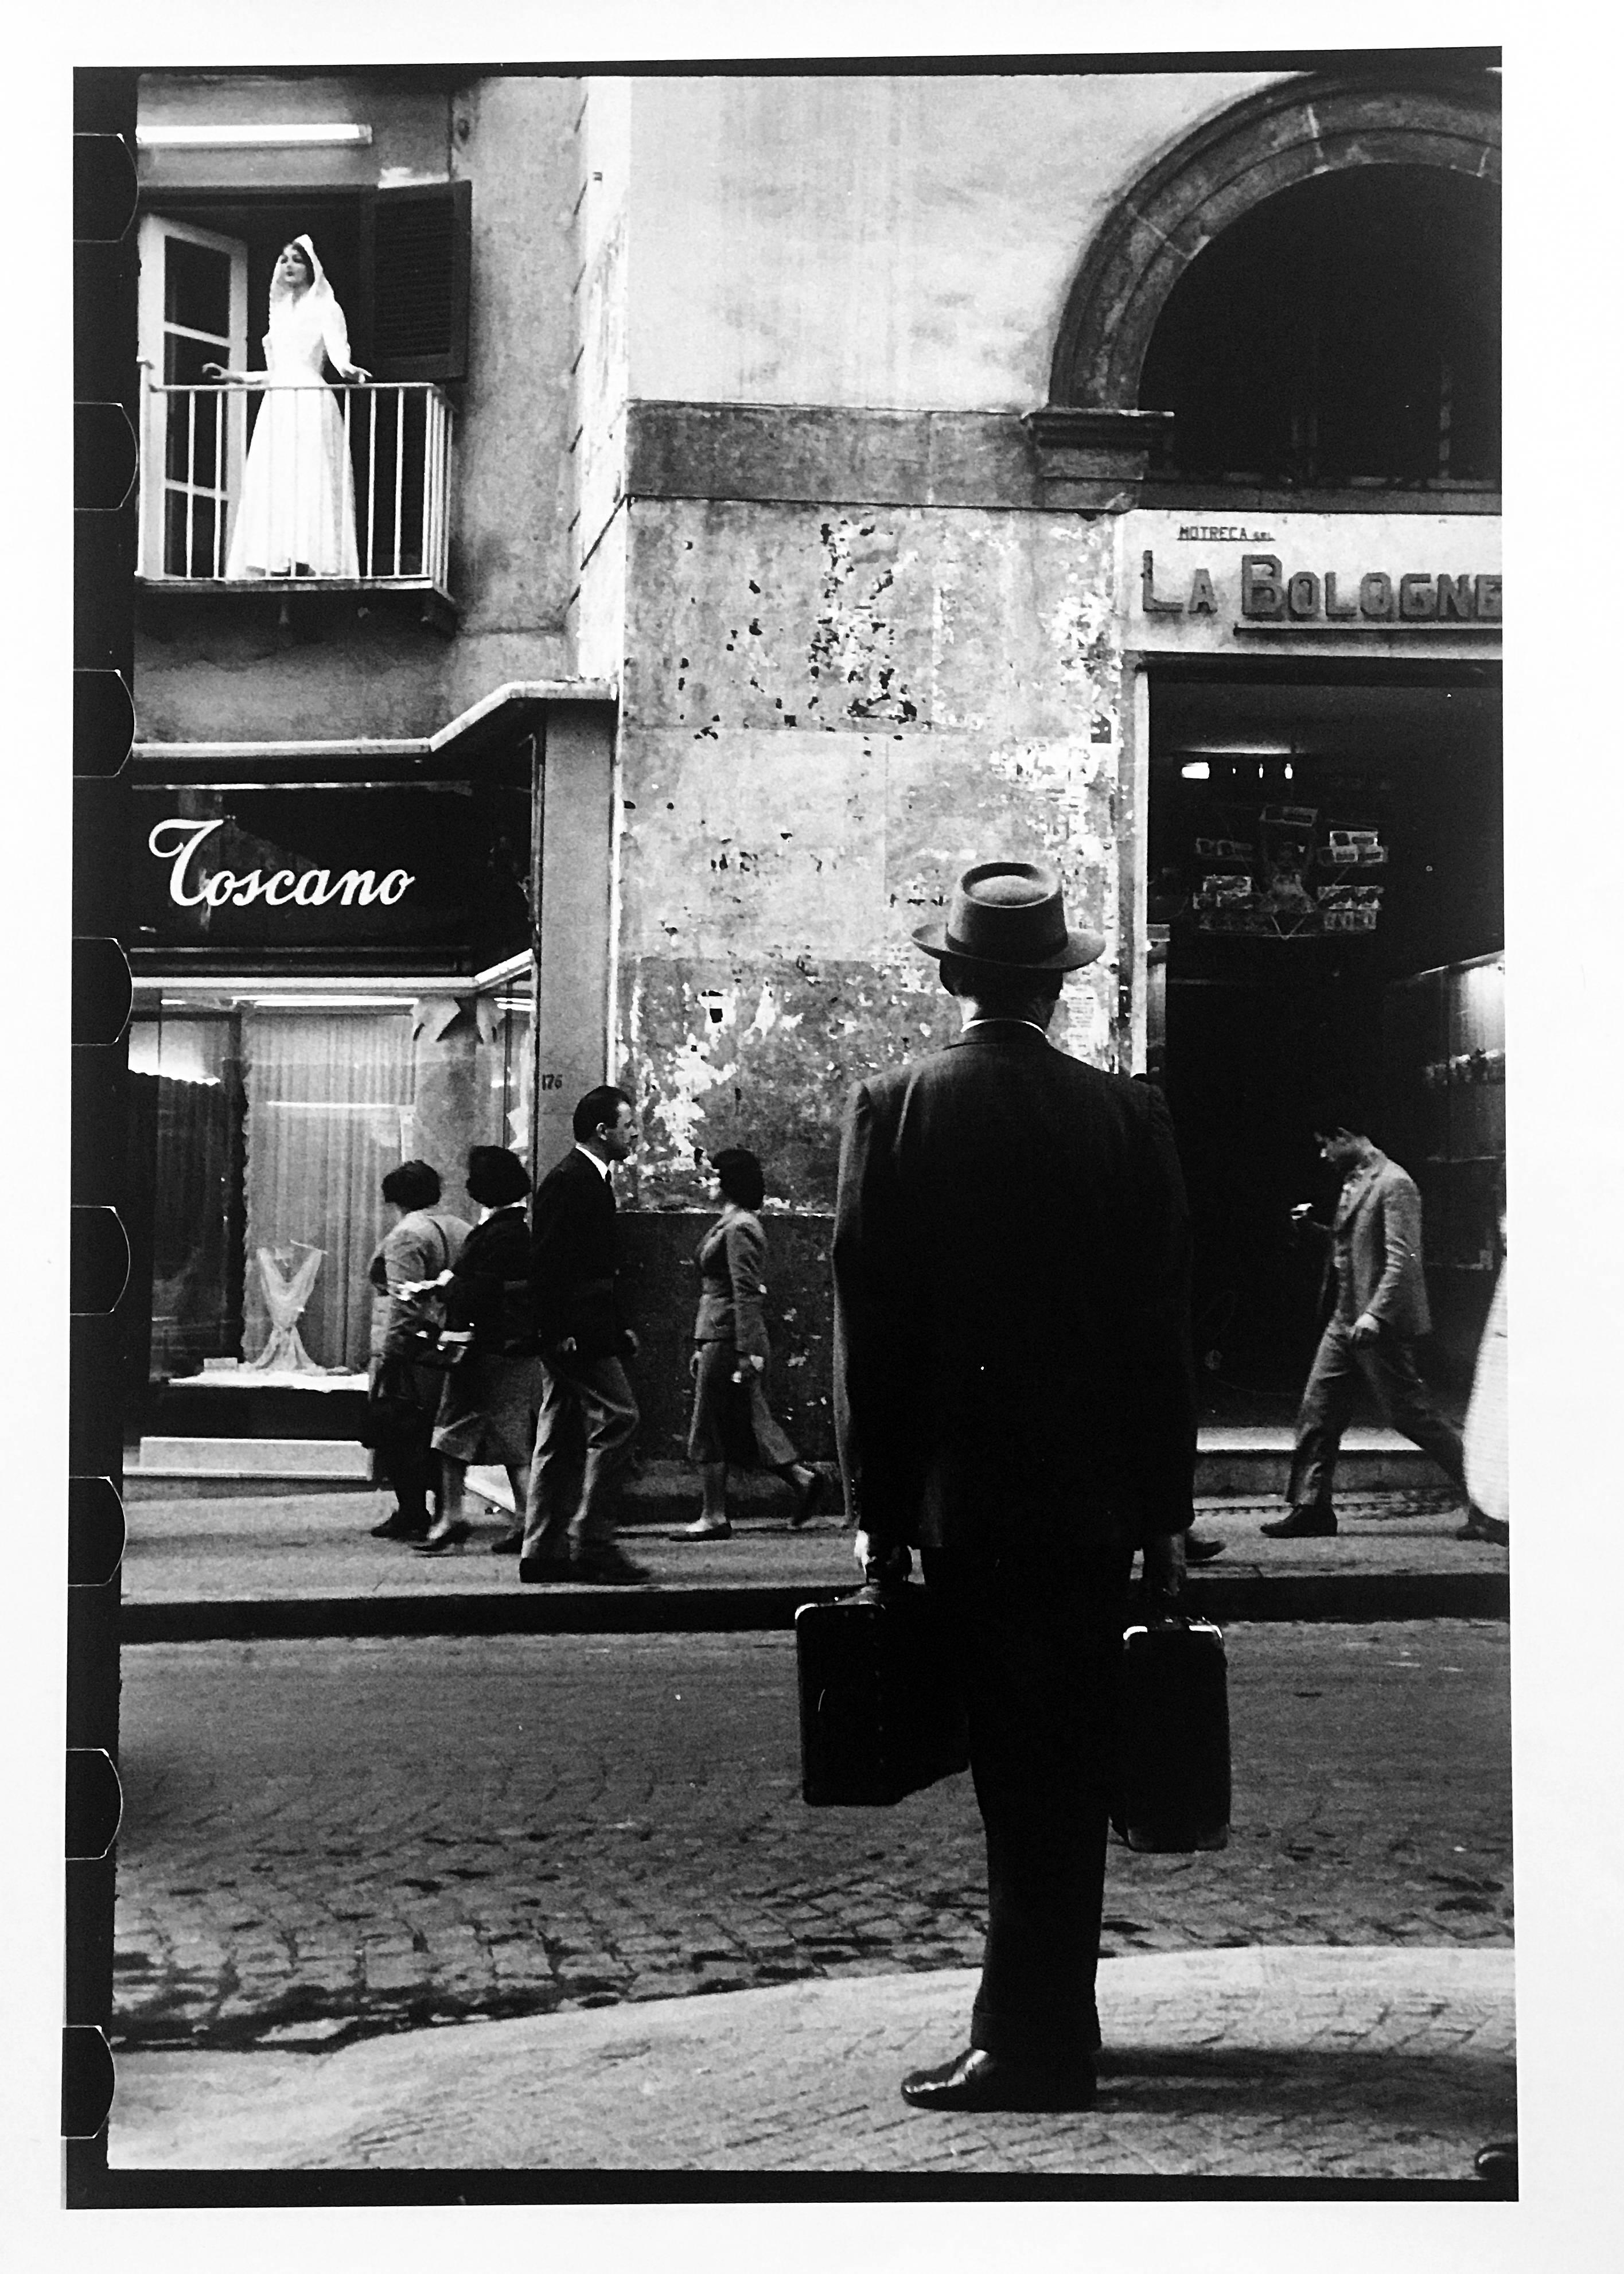 Portrait Photograph Leonard Freed - Bride, Naples, Italie, photographie de rue noire et blanche des années 1950